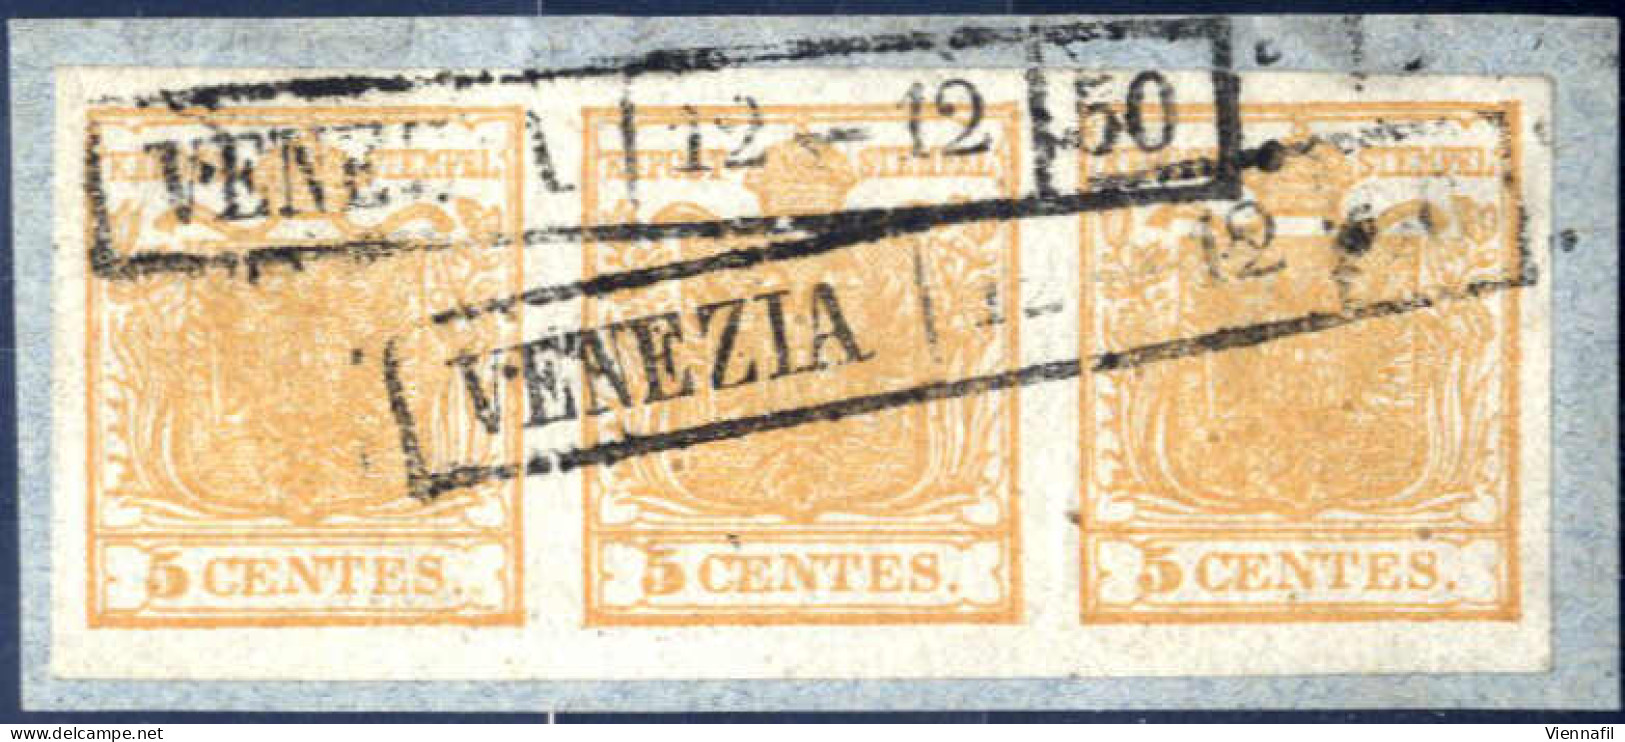 Piece 1850, 5 Cent. Giallo Bistro Striscia Orizzontale Di Tre Su Frammento Annullato Venezia 12-12-50, Splendido, Firmat - Lombardy-Venetia